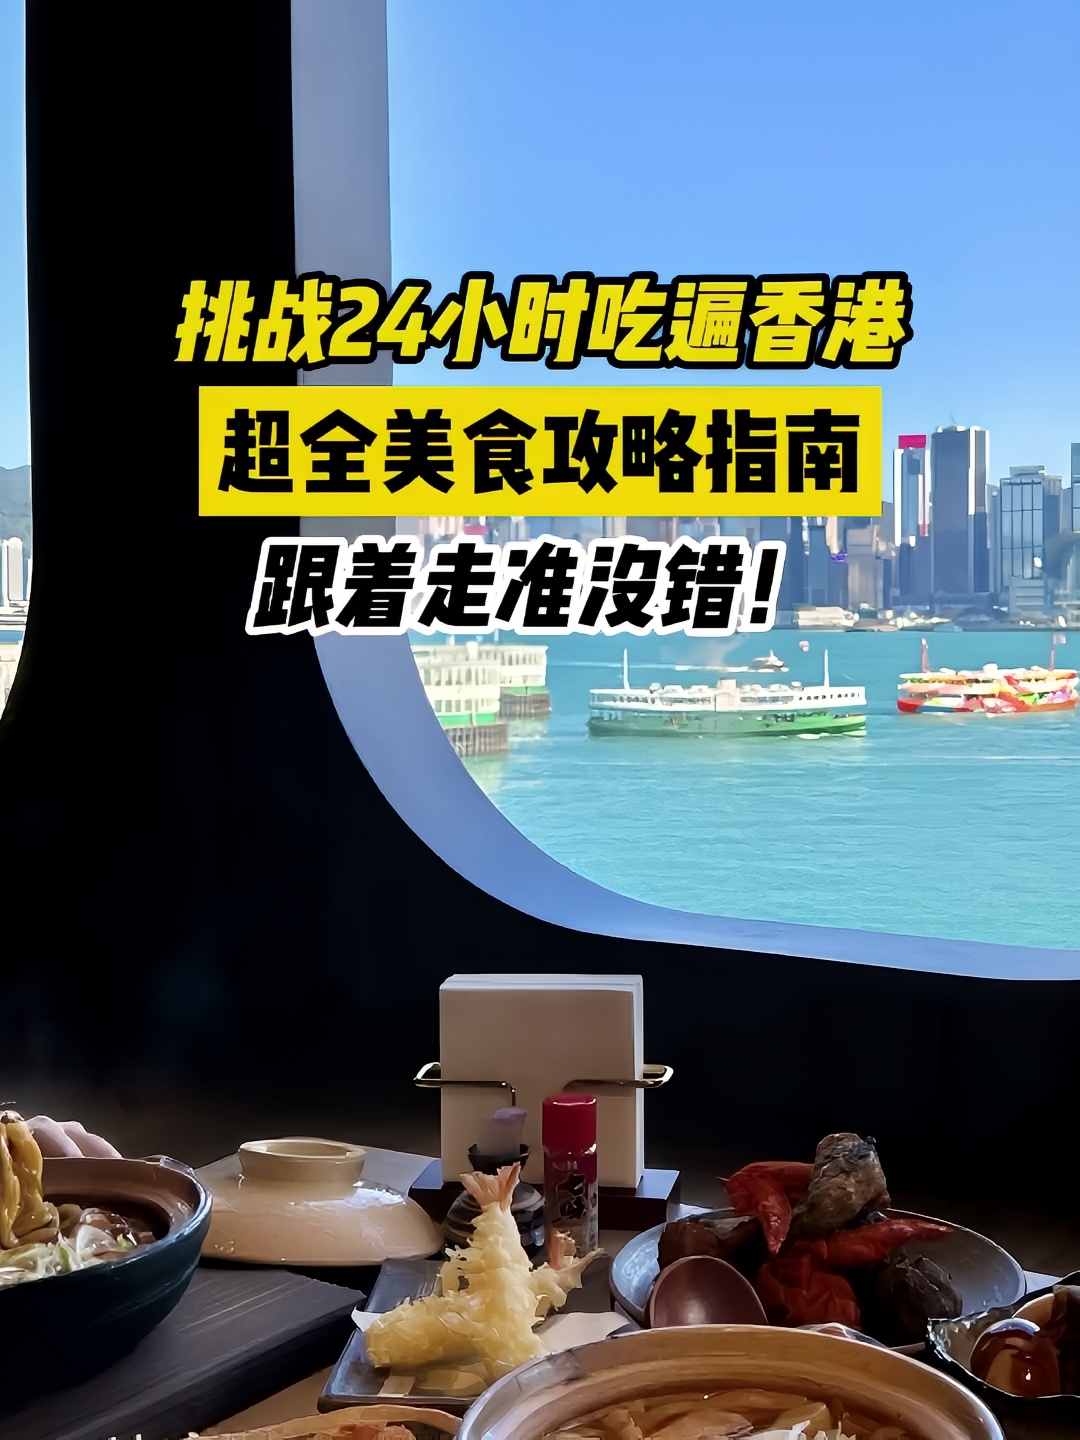 挑战24小时吃遍香港！超全美食攻略来啦#香港旅游攻略 #香港美食 #香港拍照 #香港美食推荐 #香港